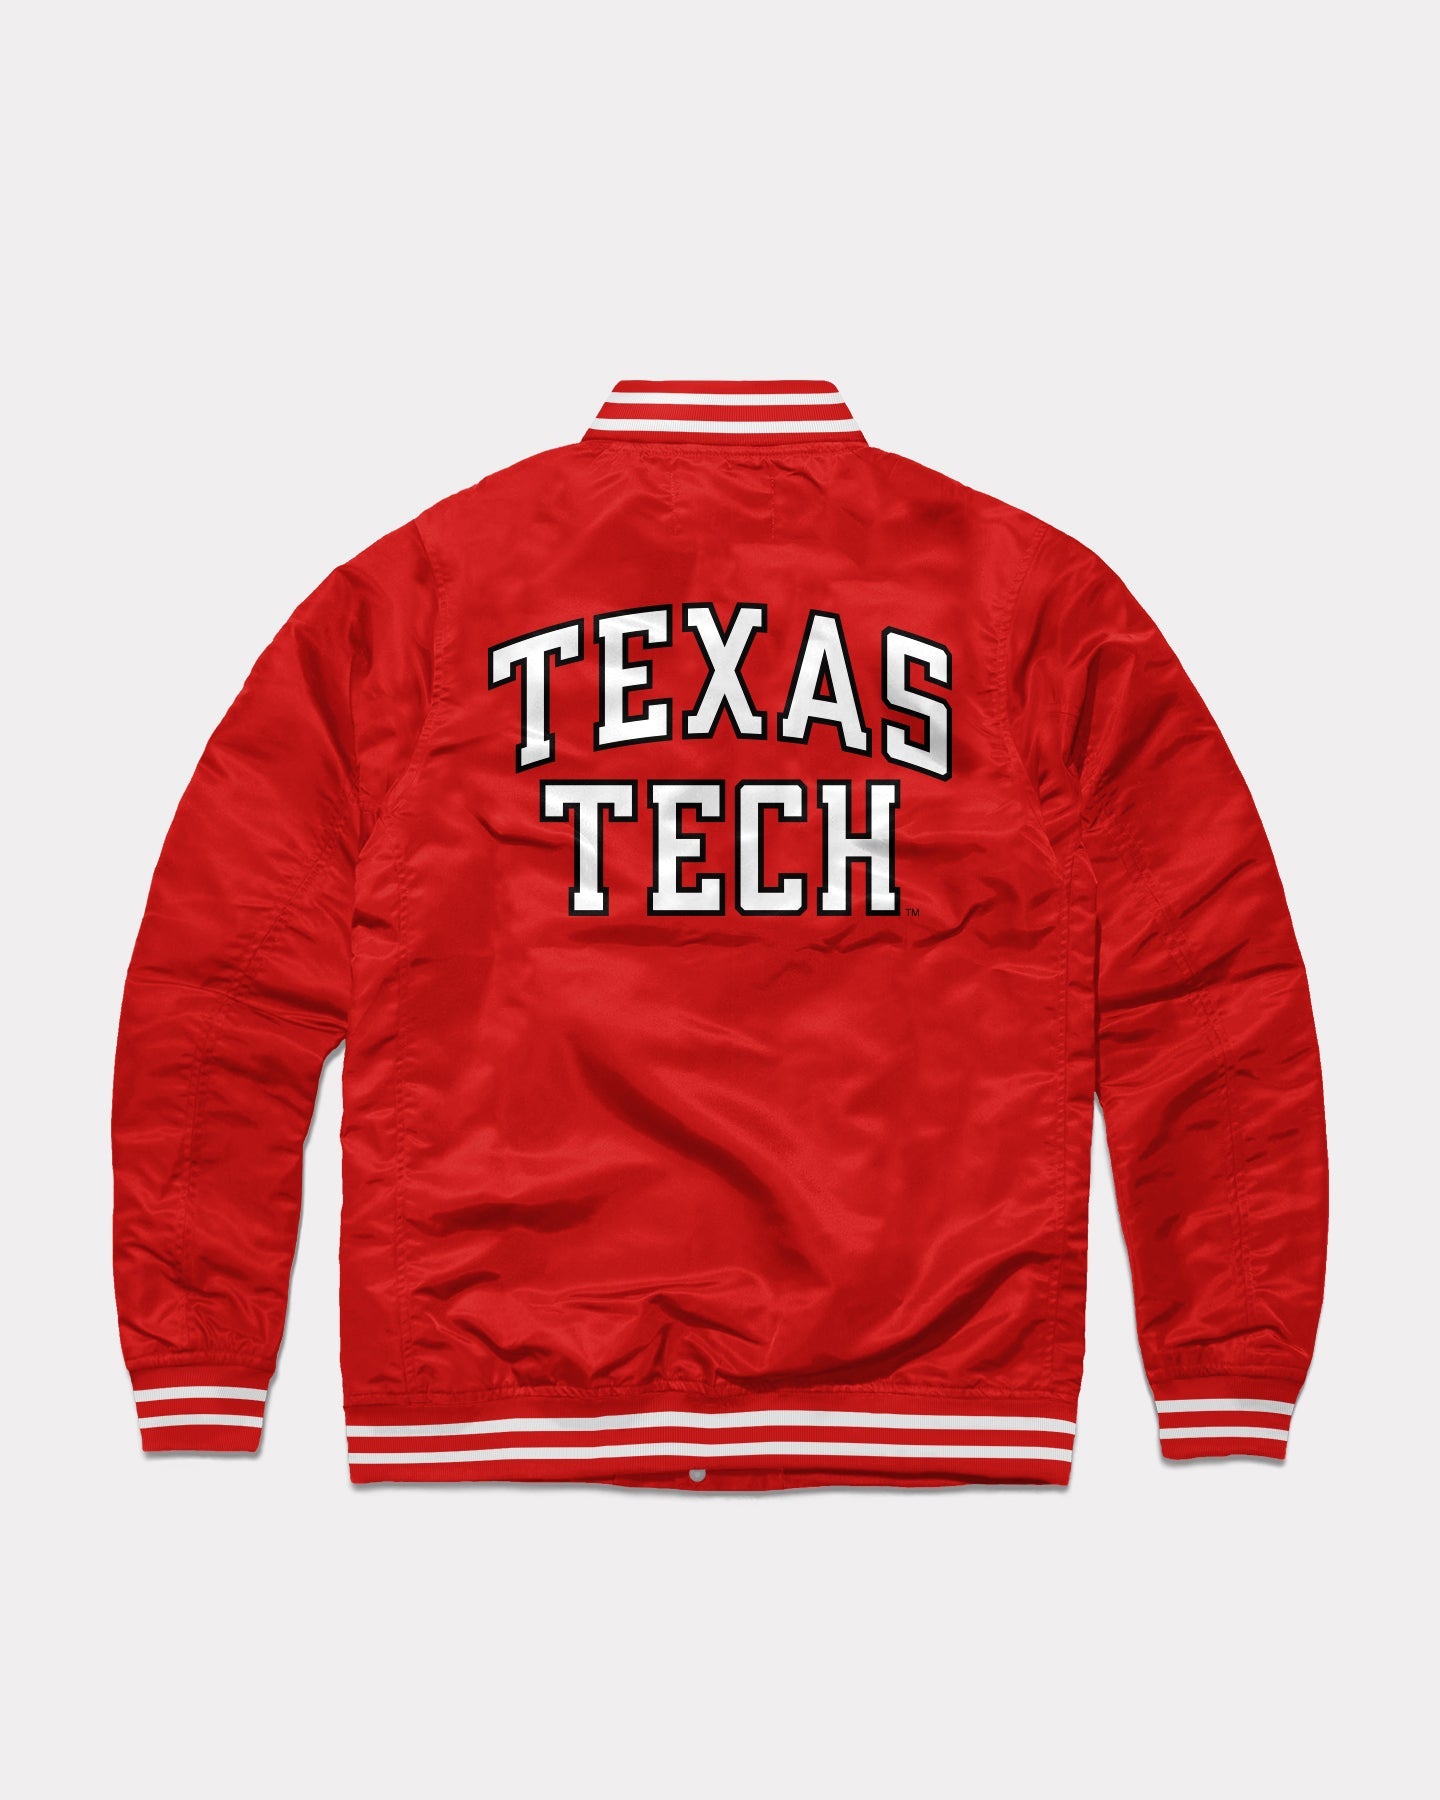 Texas Tech Basketball Gear, Texas Tech University Apparel, TTU Gifts